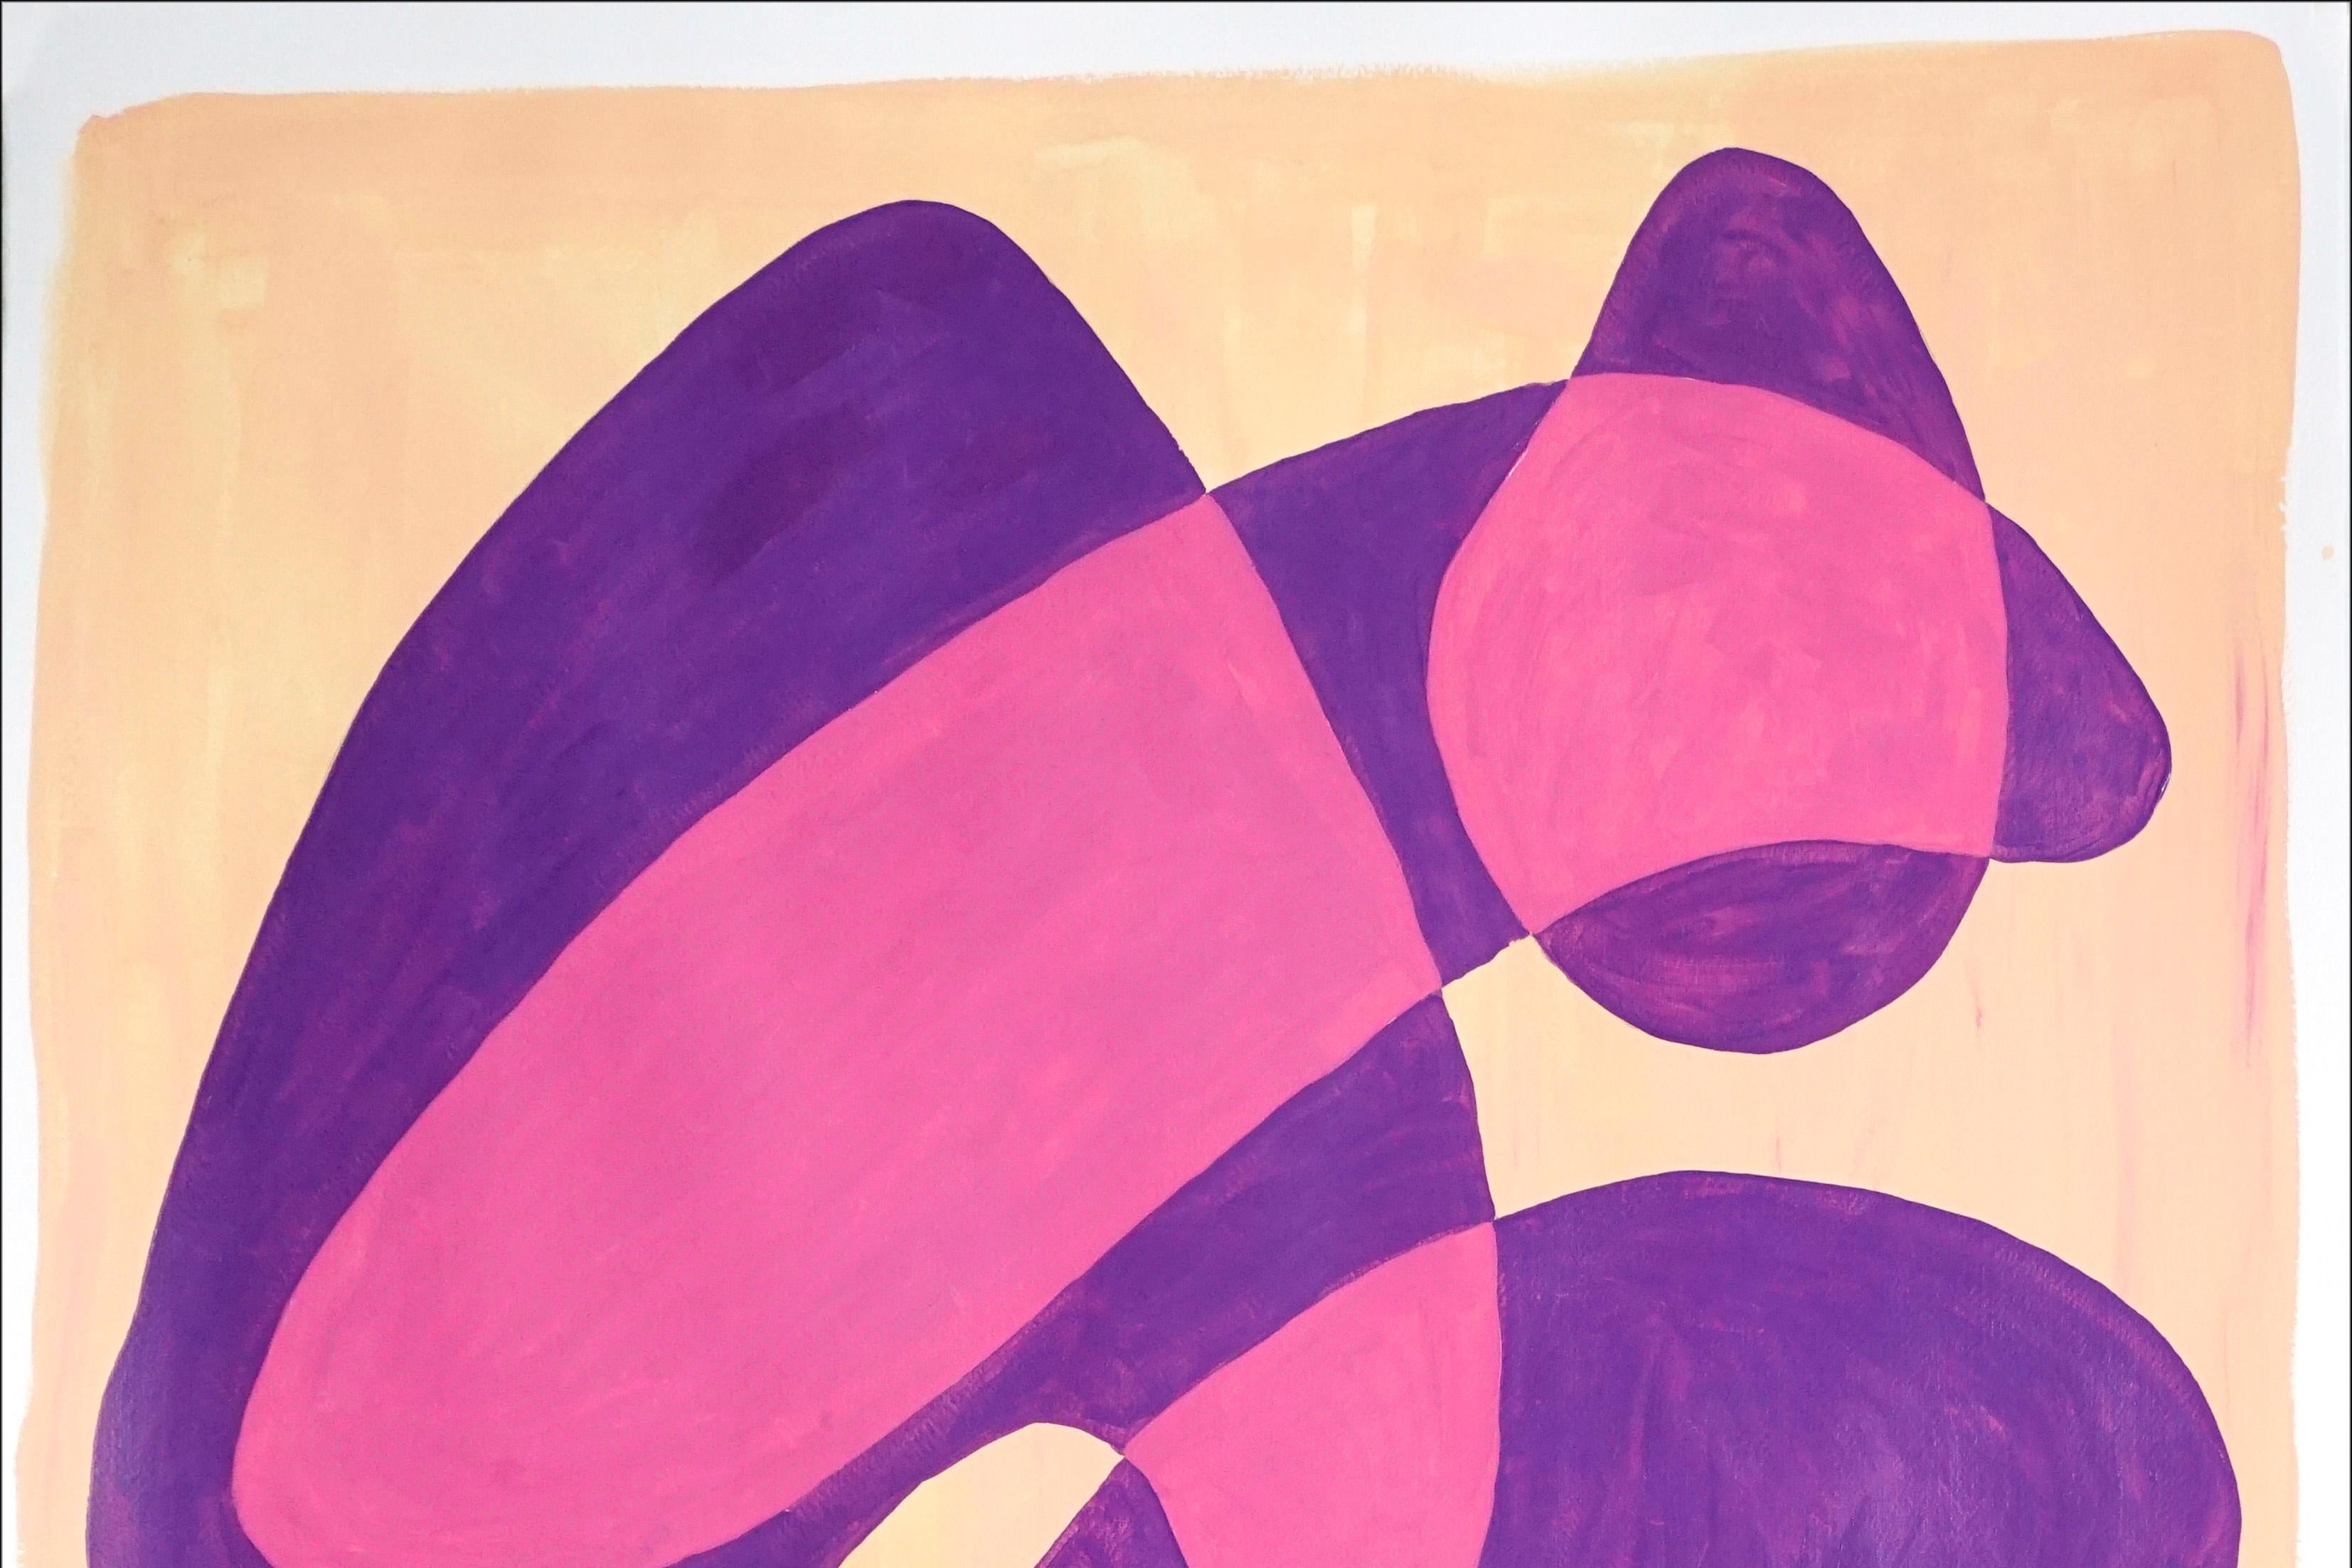 Violette, durchscheinende Blasen, Mid-Century-Formen in warmen Tönen, sich überlappende Schichten (Art déco), Painting, von Ryan Rivadeneyra